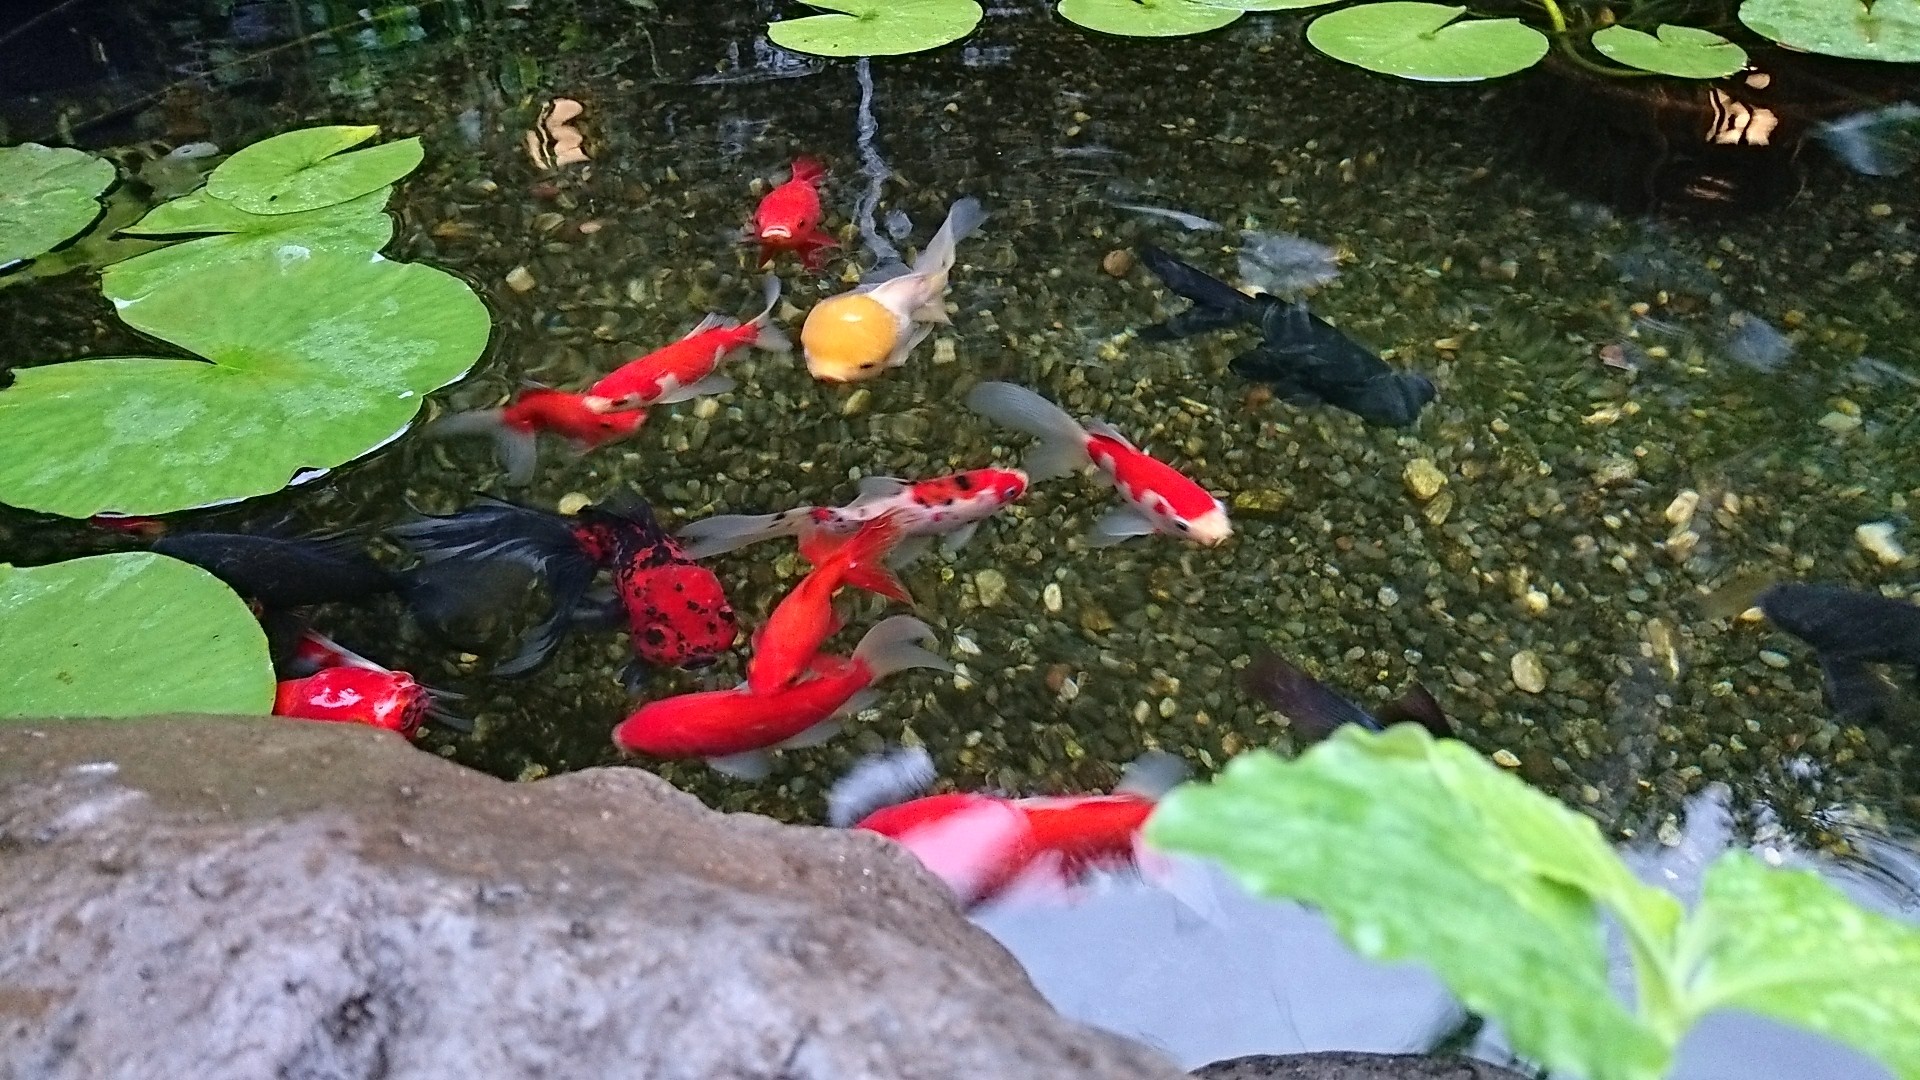 ビオトープに入れた睡蓮の土を漁る金魚対策 庭池日記